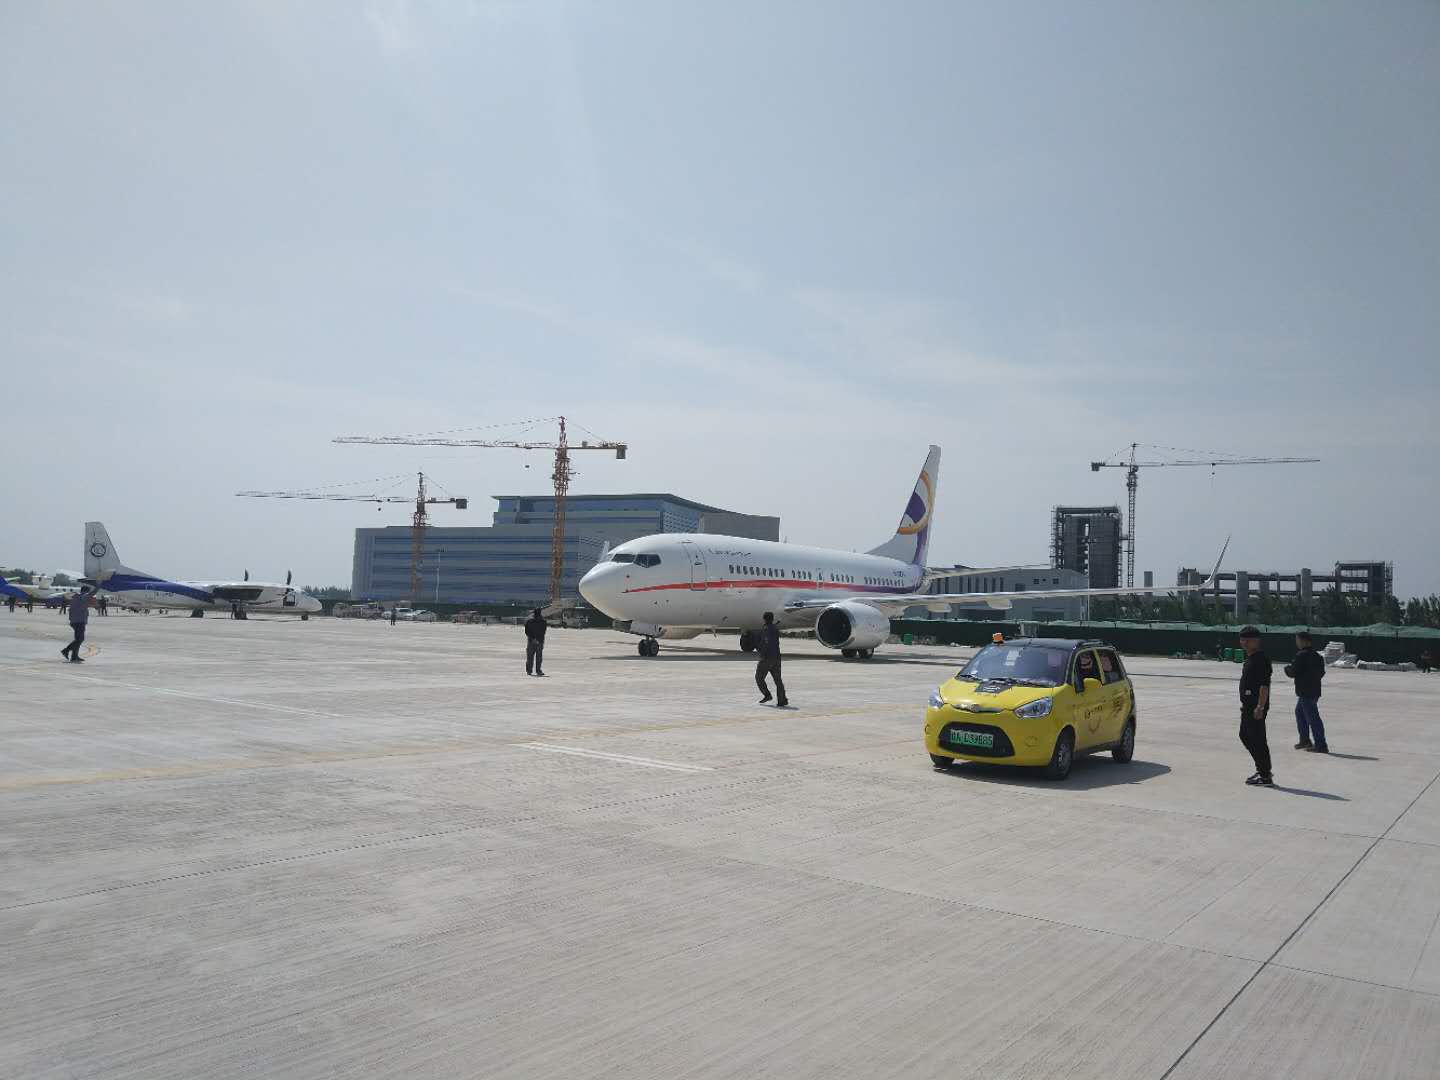 最亮眼的机型来了!首架大型窄体客机波音737bbj抵达郑州上街机场